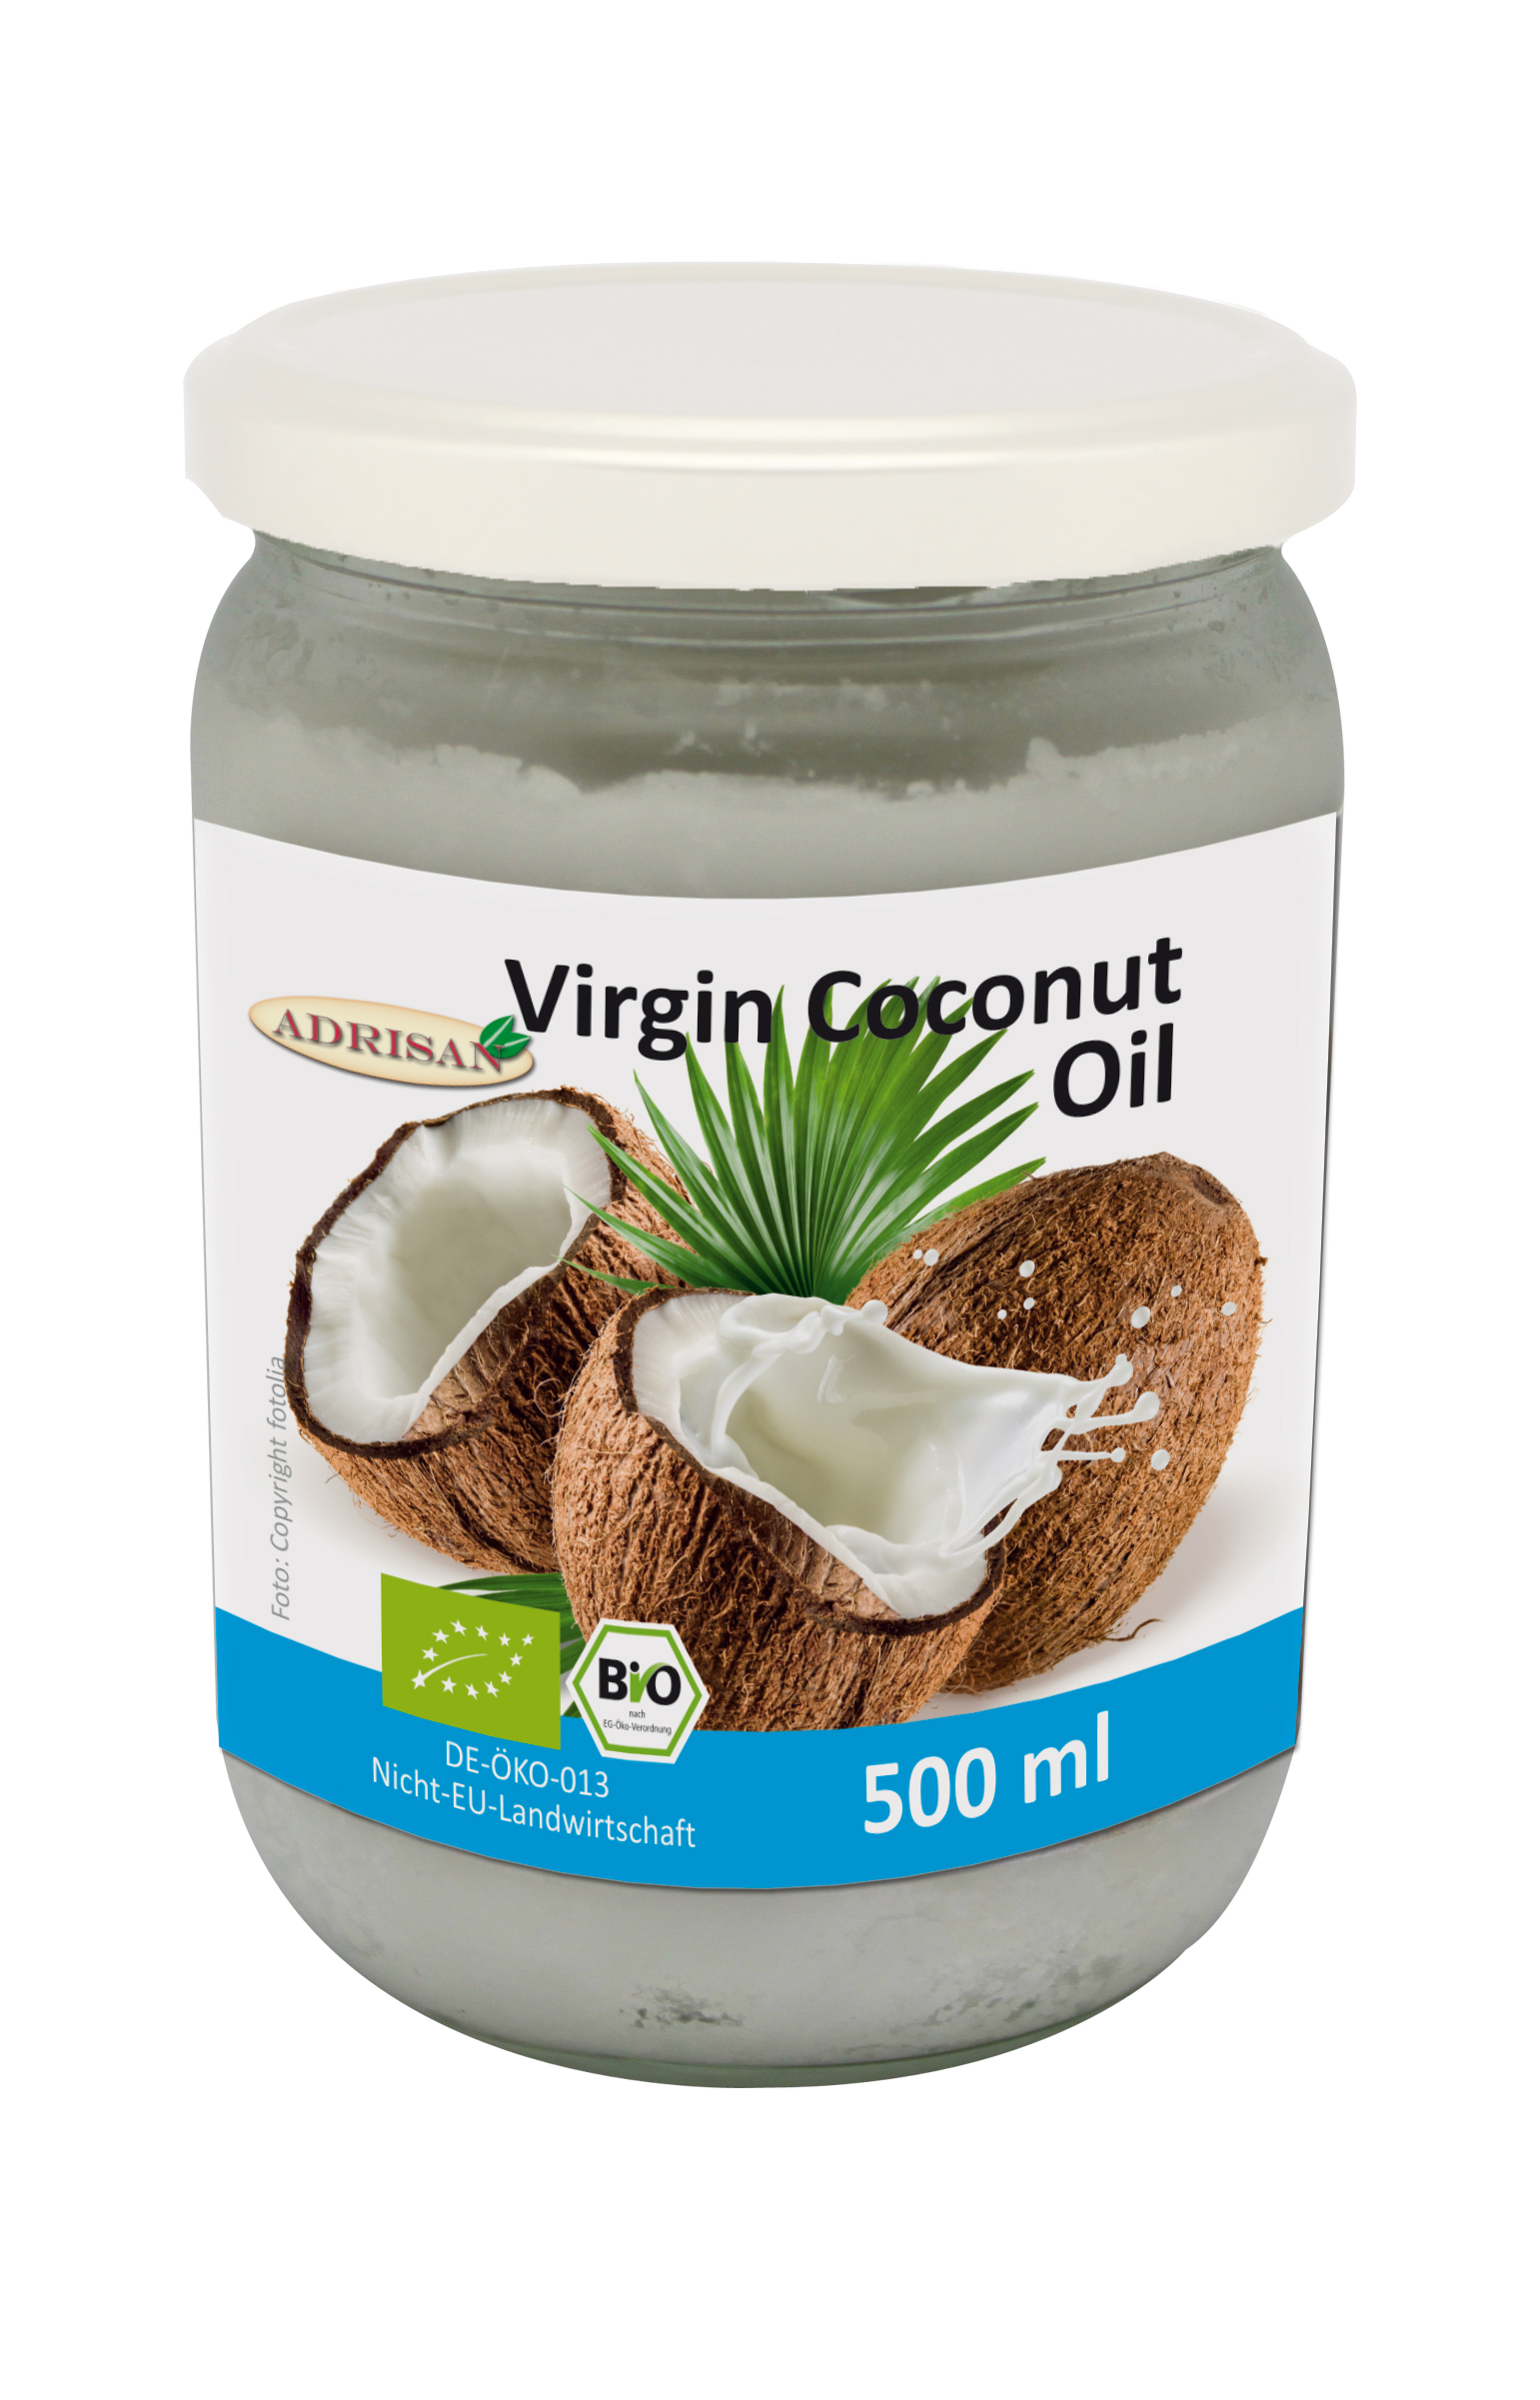 Kokosoel oder auch Virgin Coconut Oil, ist sehr vielseitig